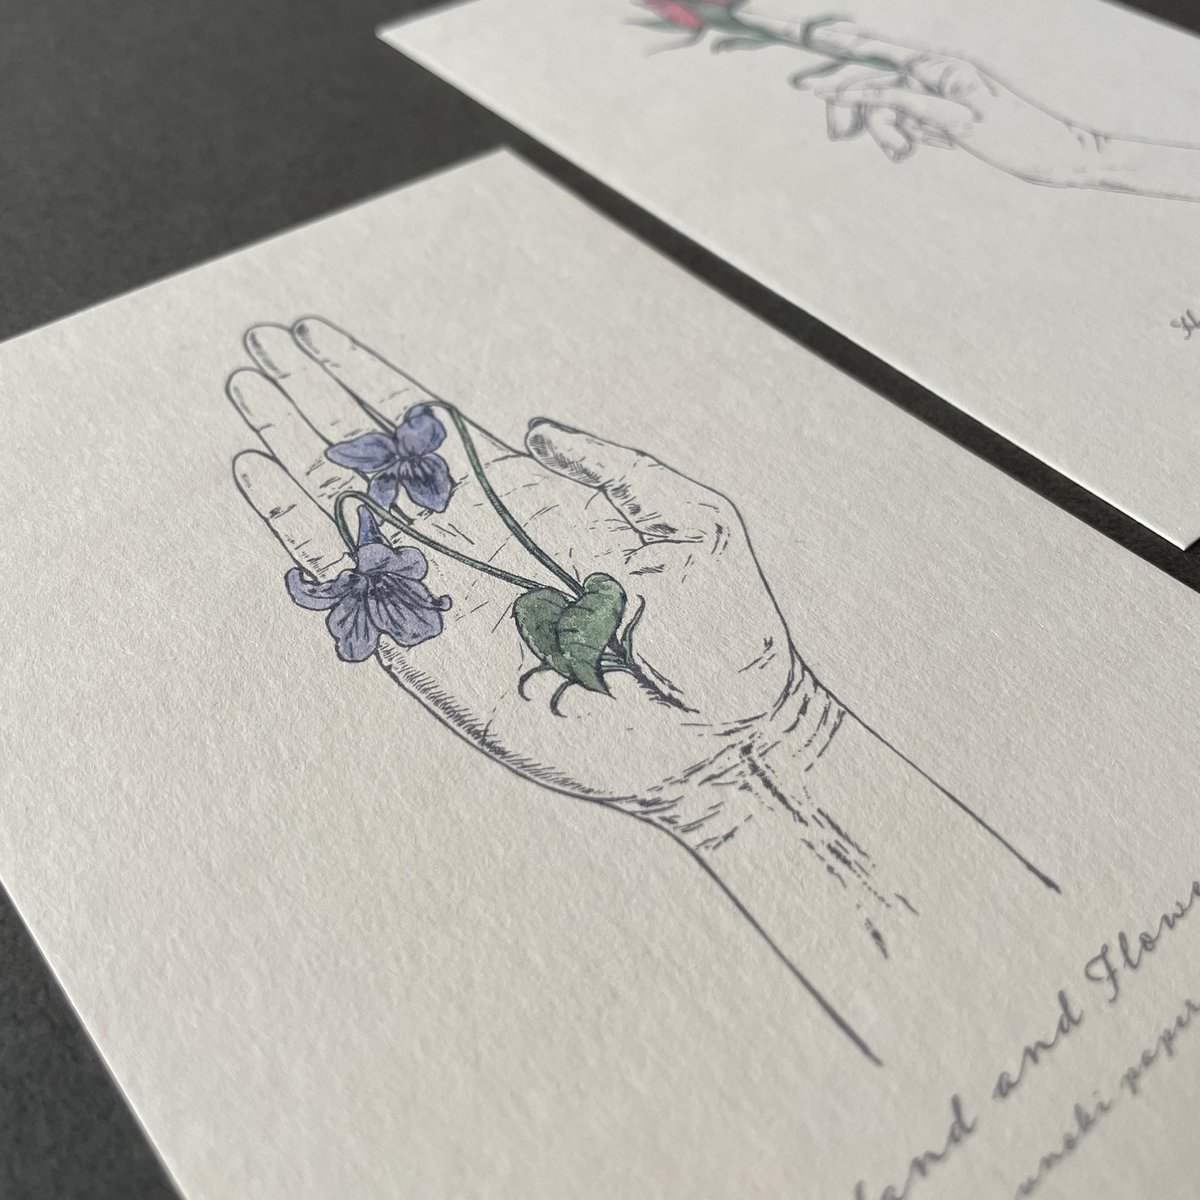 #手と花

カードは「菫の花」「薔薇の蕾」の2種類。
カードのみの販売はございません。
どちらも花を持っているように見えて、手から生えている…というコンセプトで描きました。
不思議なイラストを小さくて愛らしいスワッグと共に楽しんでいただきたいです。 